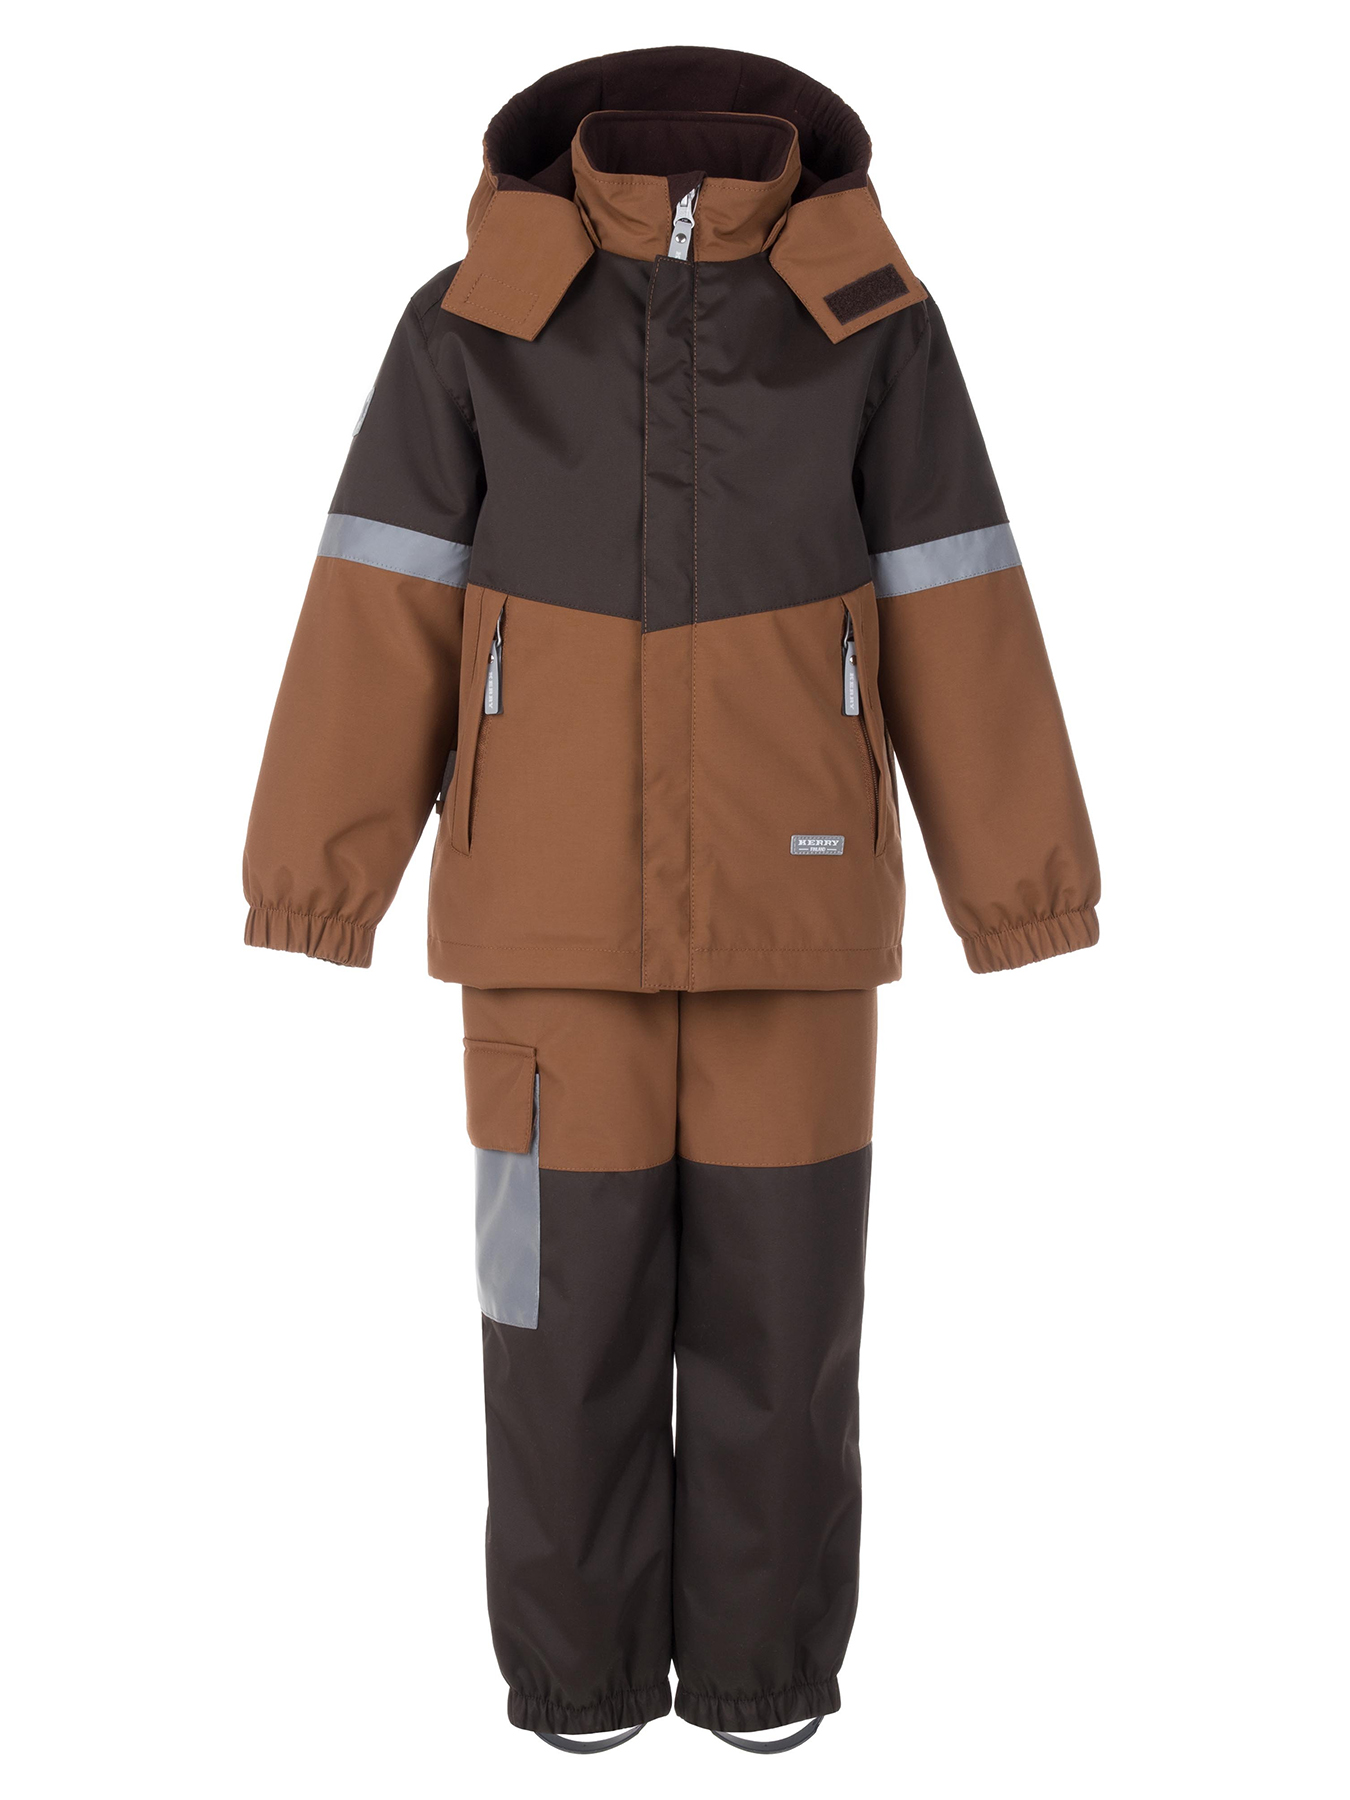 Комплект верхней одежды KERRY DRAKE K24036, 801-коричневый/темно-коричневый, 116